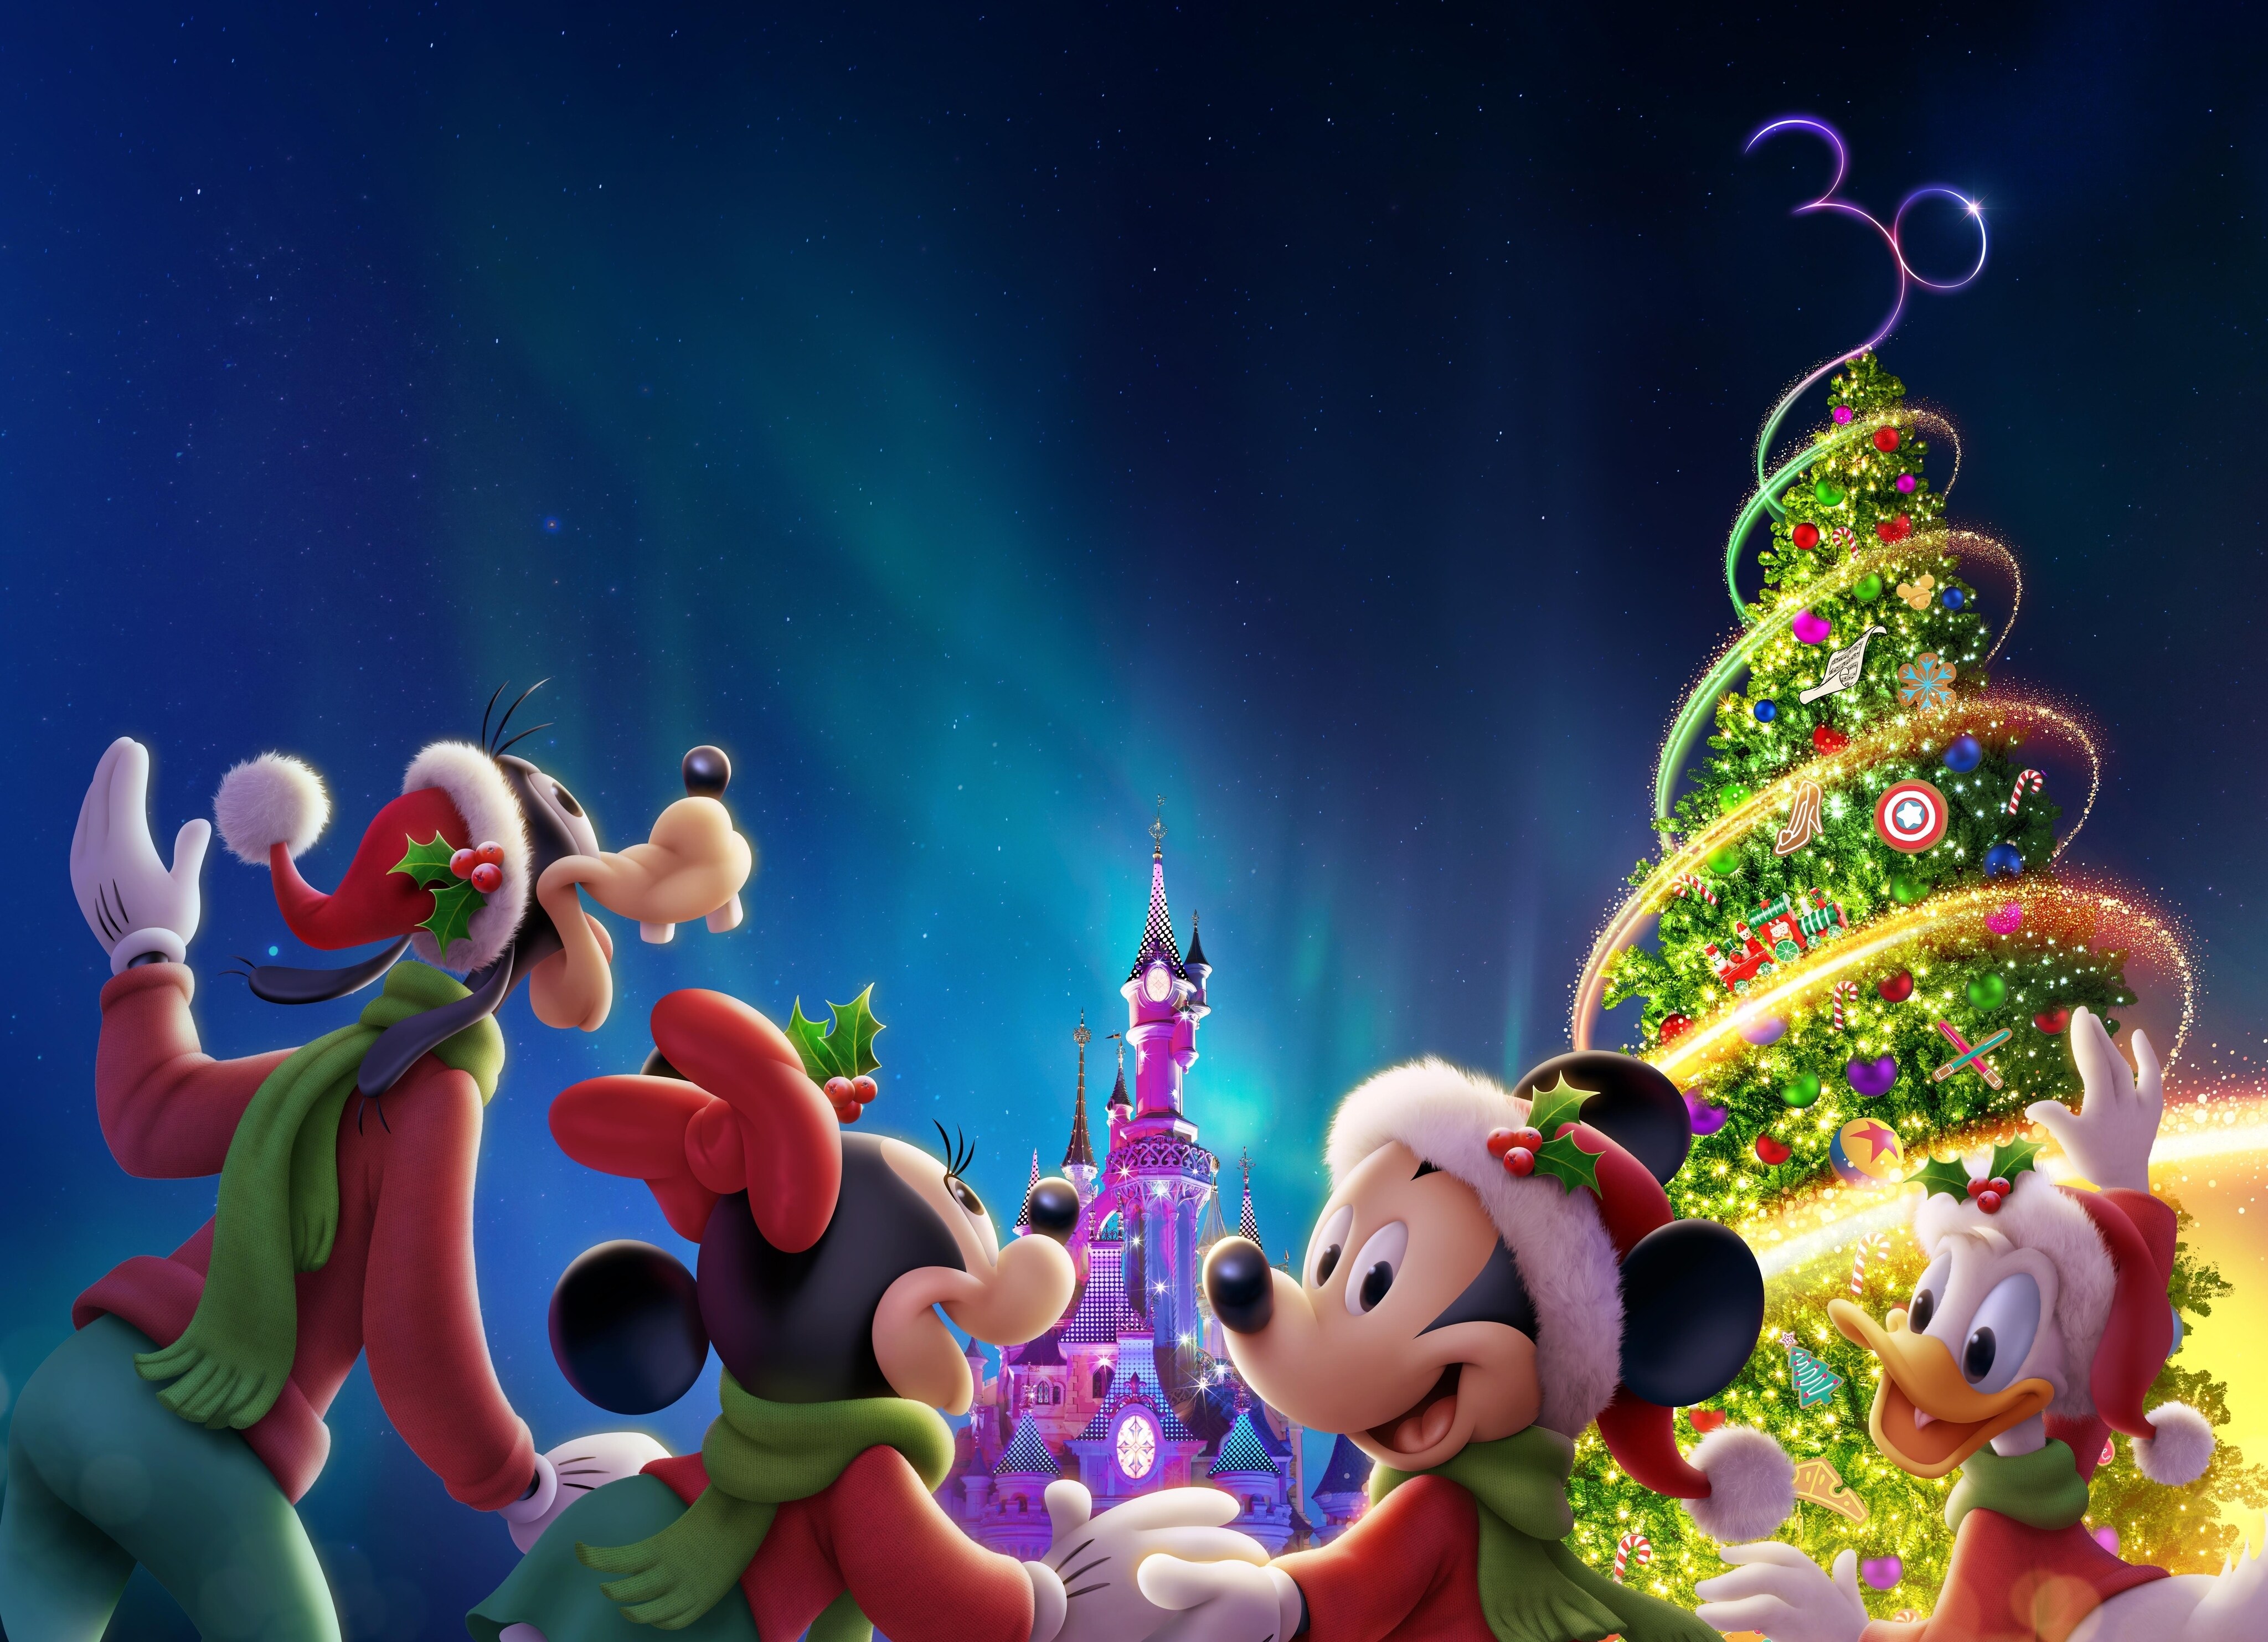 La magia de la Navidad llega con fuerza a  Disneyland Paris desde el 12 de noviembre de 2022  hasta el 8 de enero de 2023